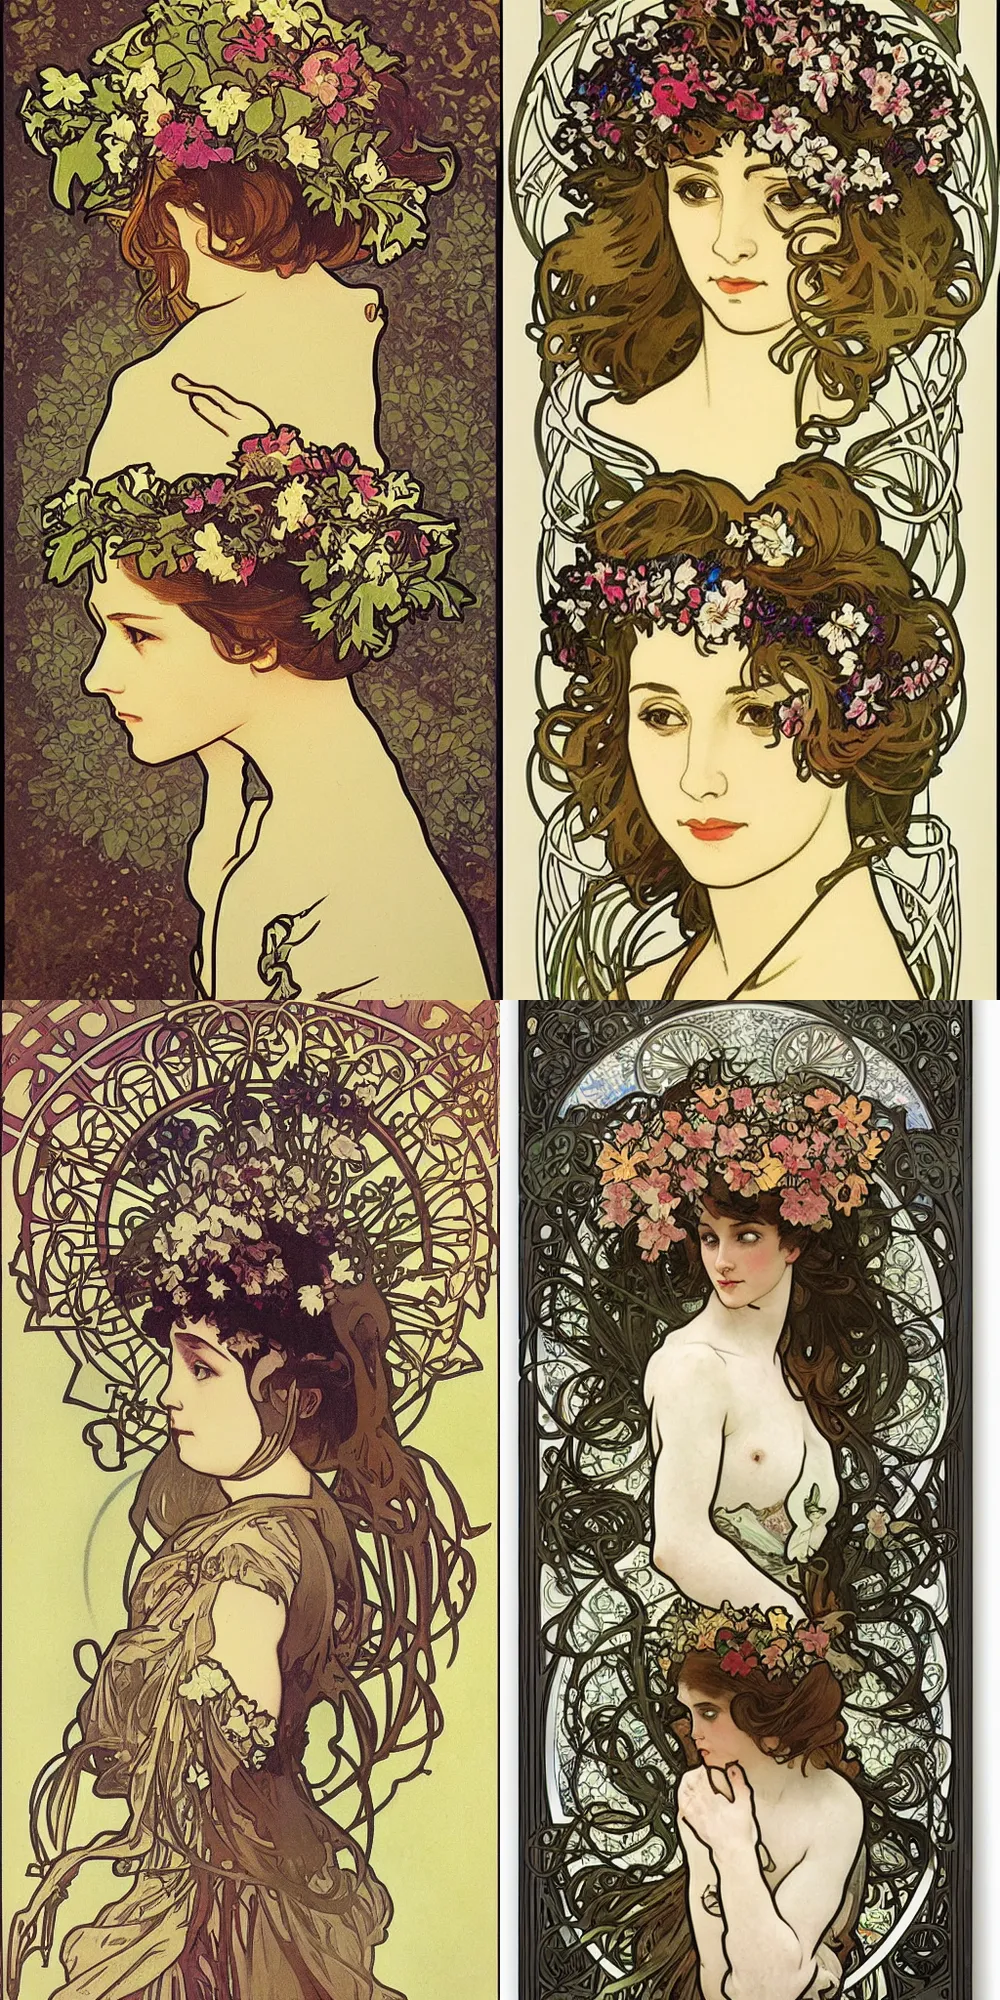 Prompt: studio light, flower crown, art nouveau by alphonse mucha, clean lines